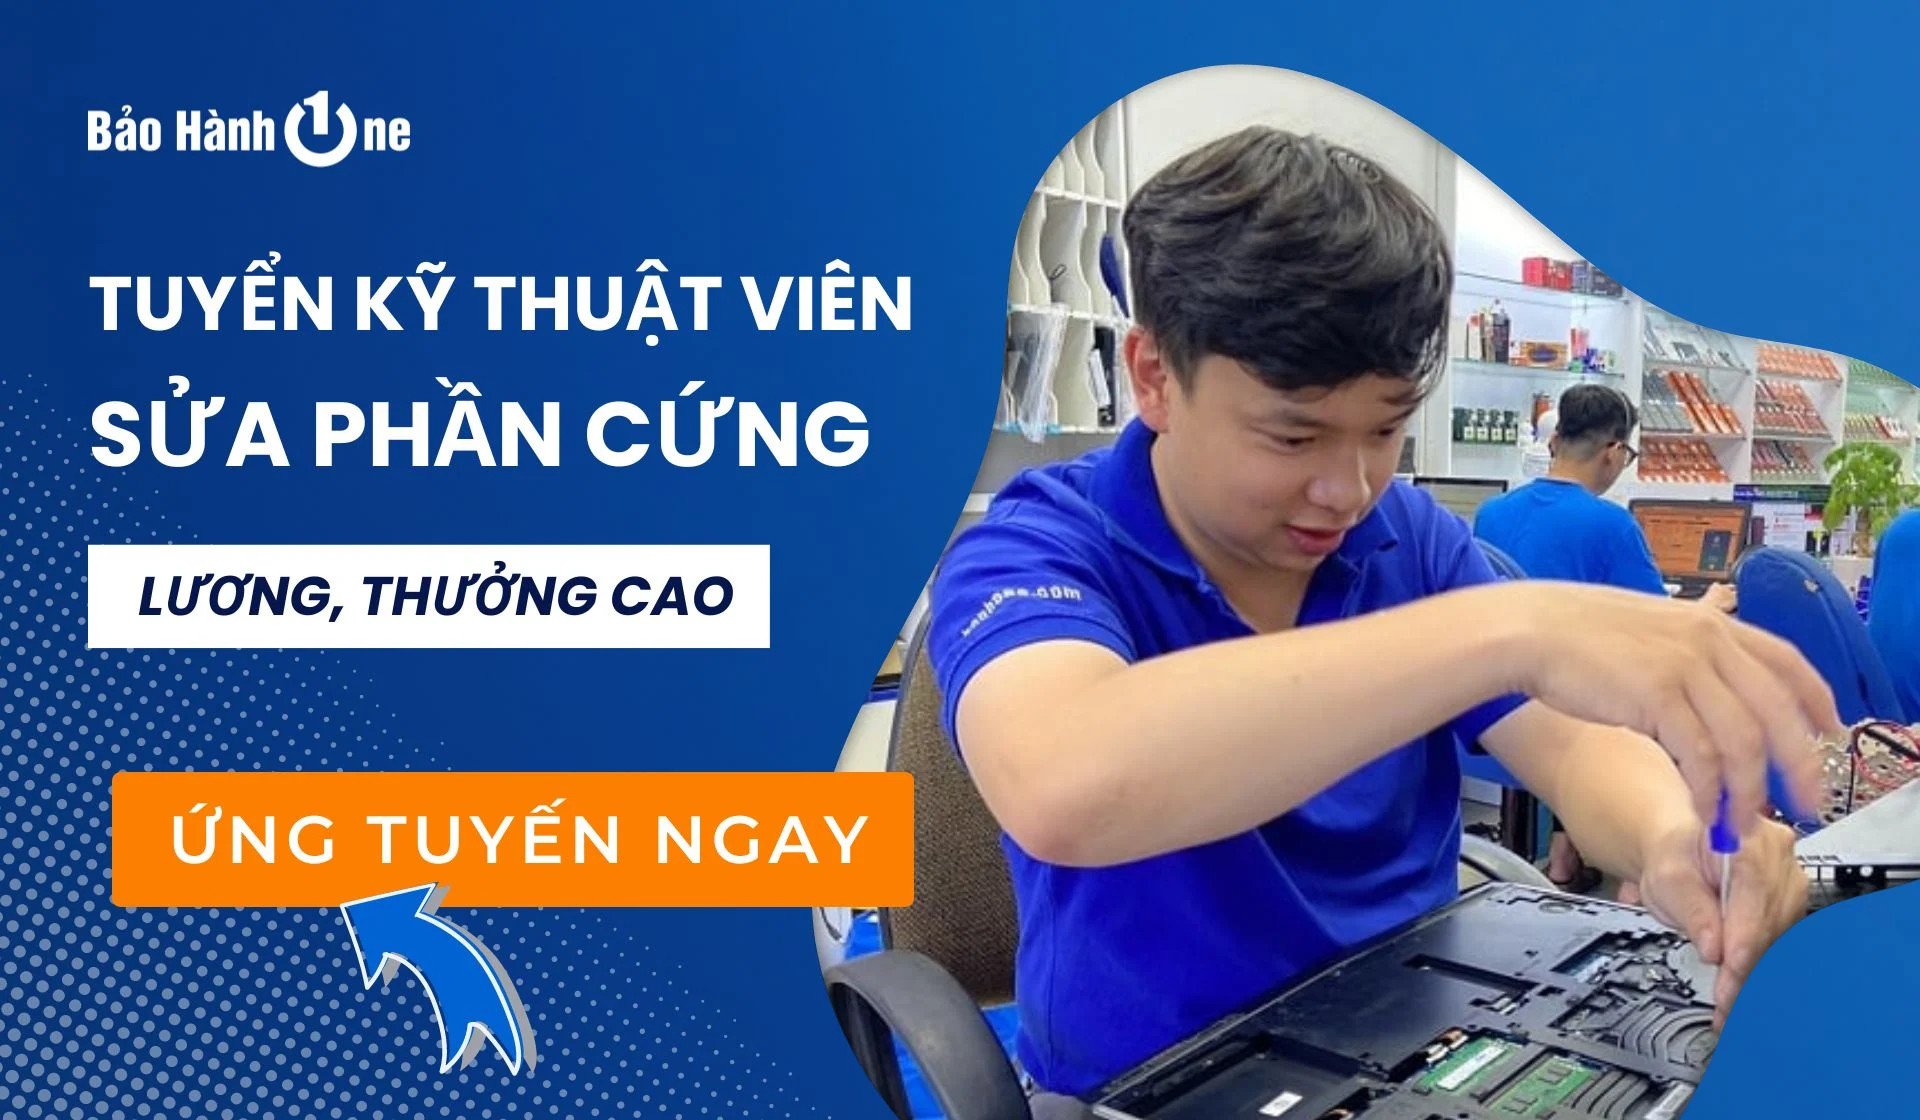 Tuyển dụng kỹ thuật sửa chữa phần cứng Laptop - Điện thoại - Máy tính bảng tại Hồ Chí Minh